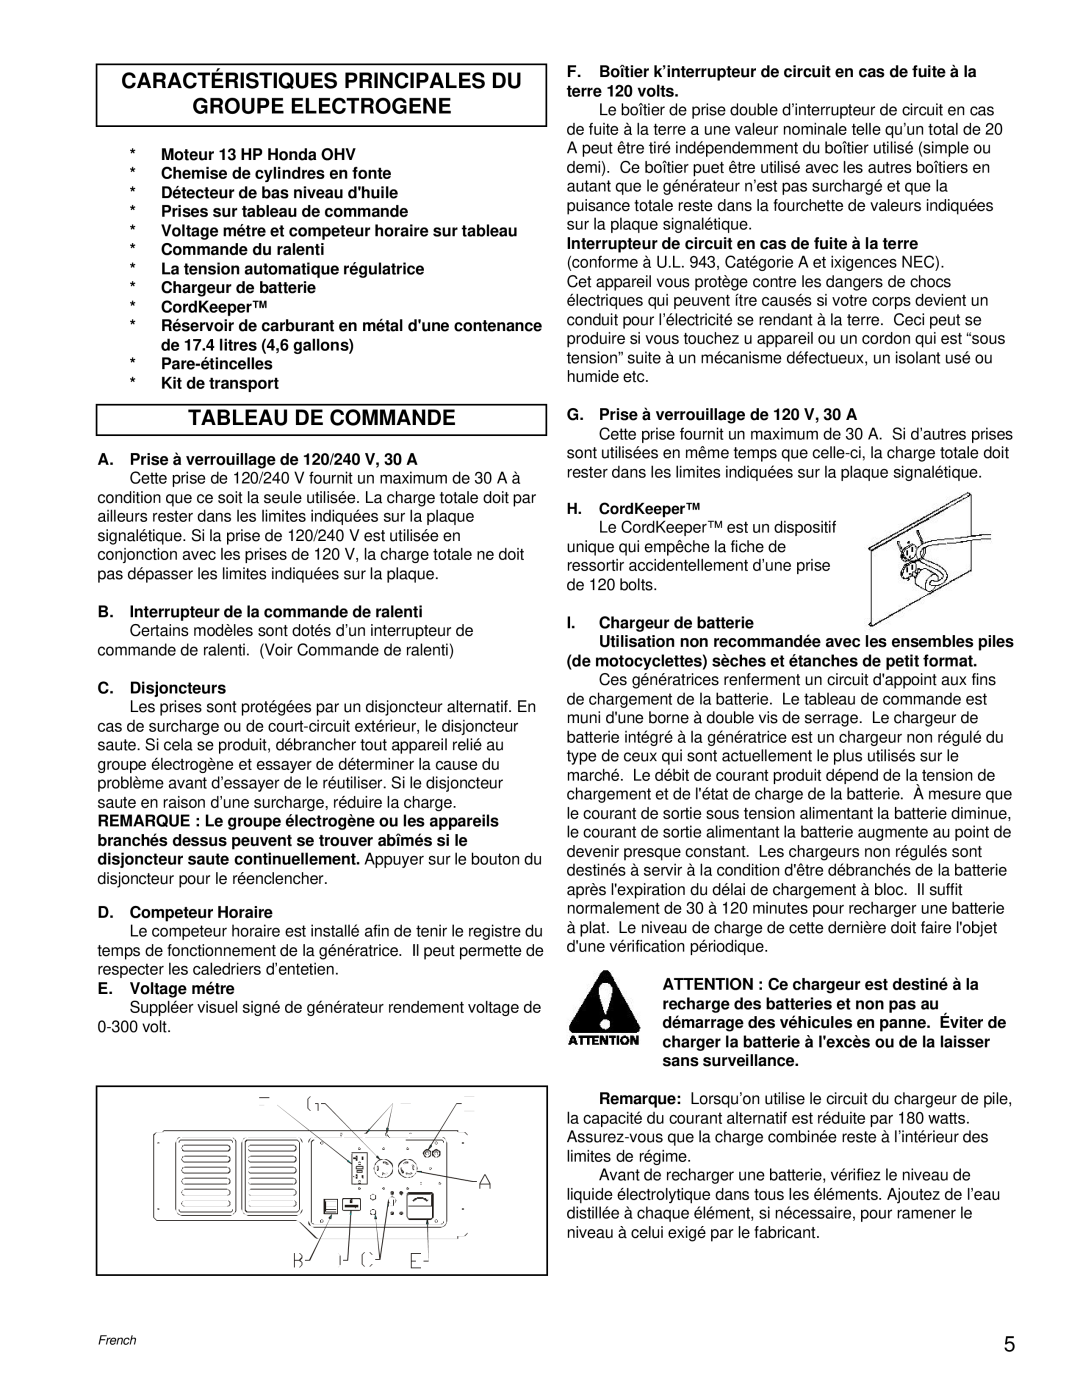 Powermate PC0496504.18 manual Caractéristiques Principales Du Groupe Electrogene, Tableau De Commande 